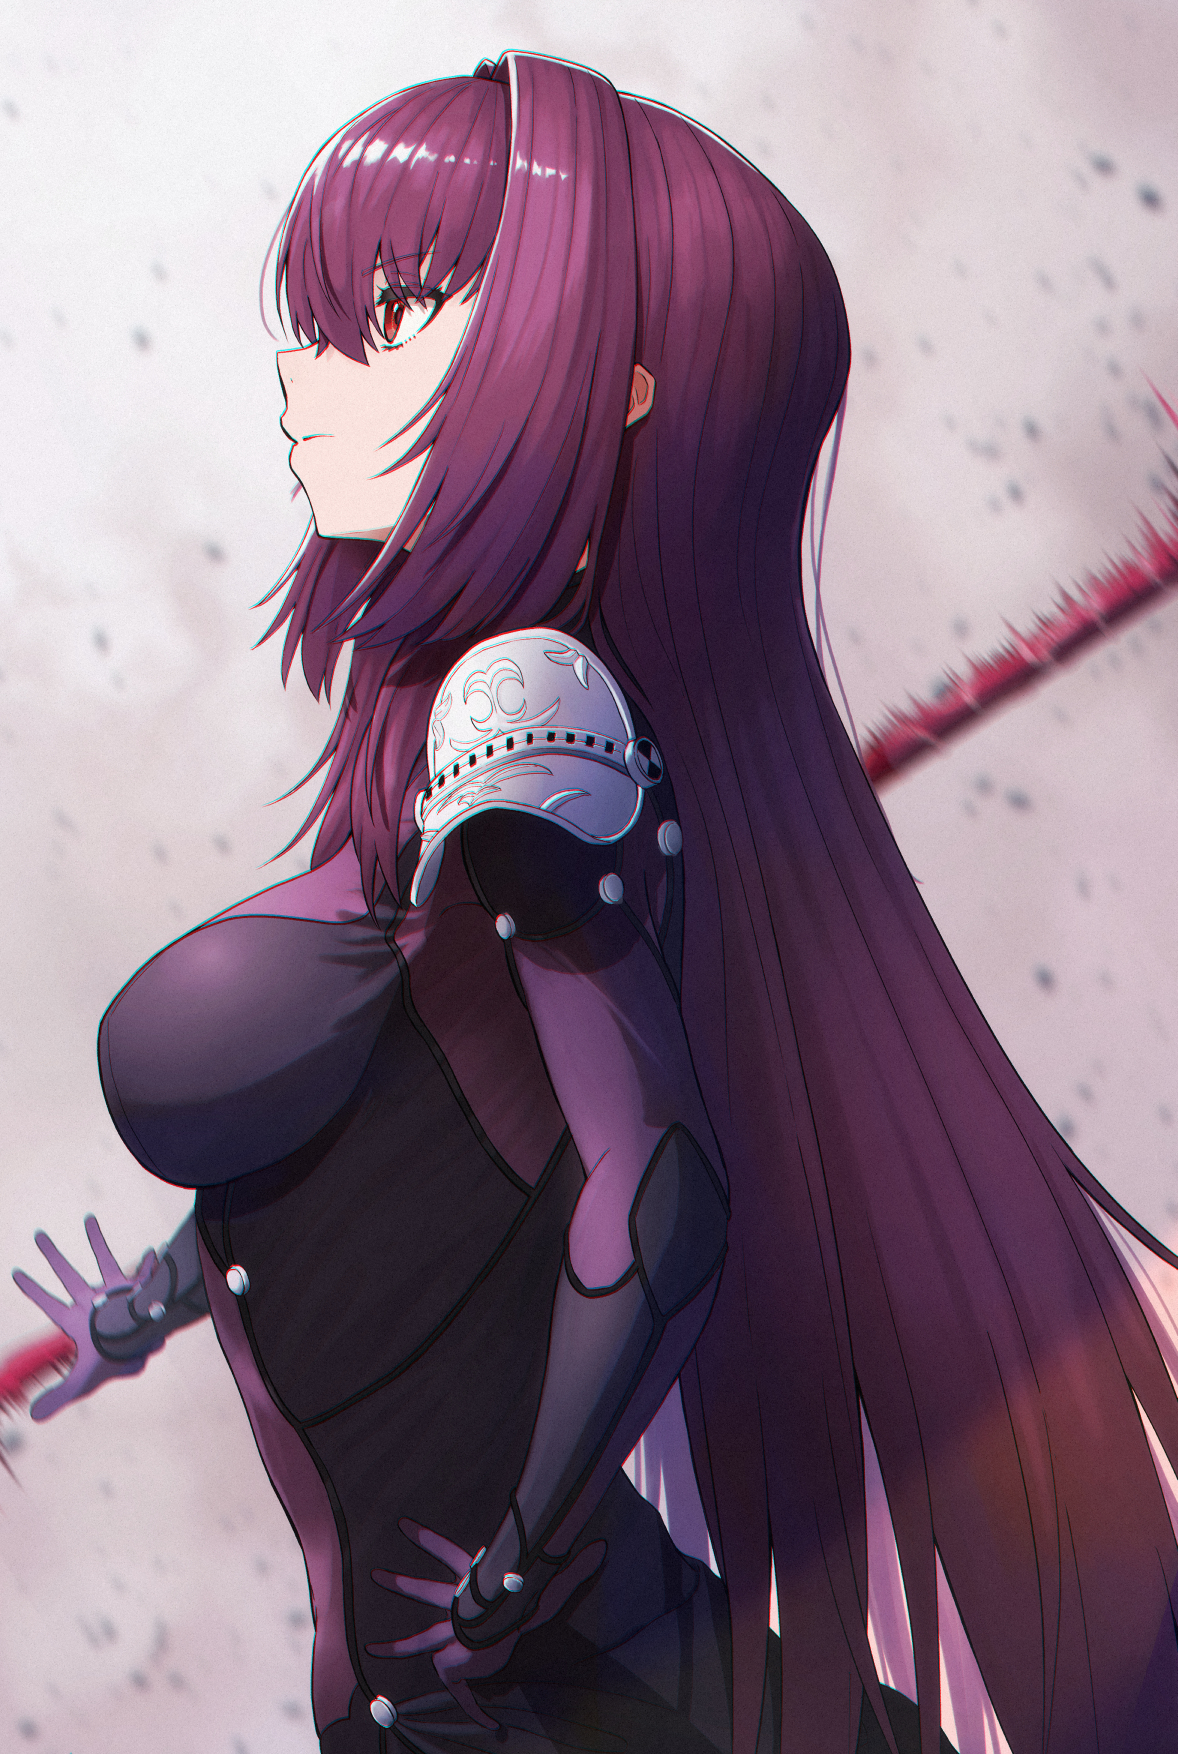 Anime 1178x1754 anime anime girls Fate series Fate/Grand Order Scathach long hair purple hair boobs